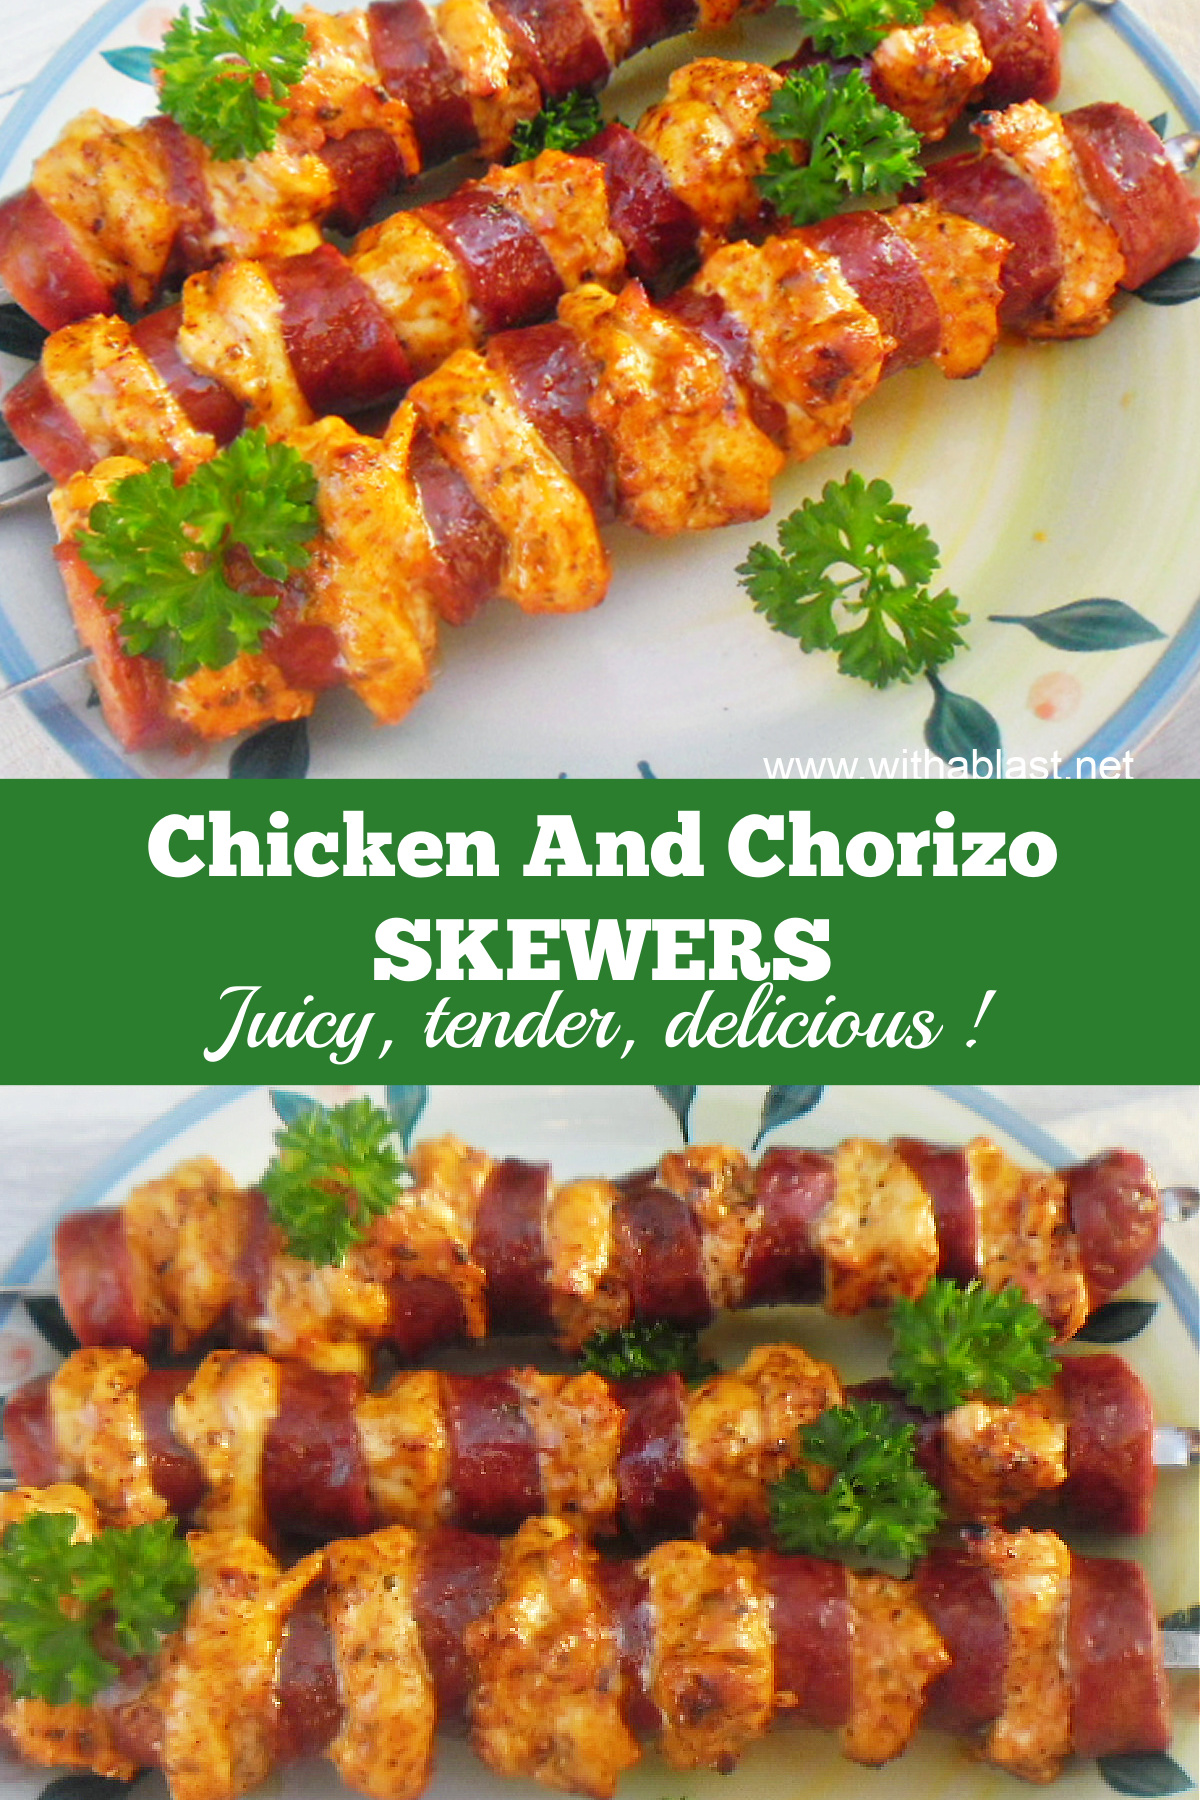 Chicken and Chorizo Skewers